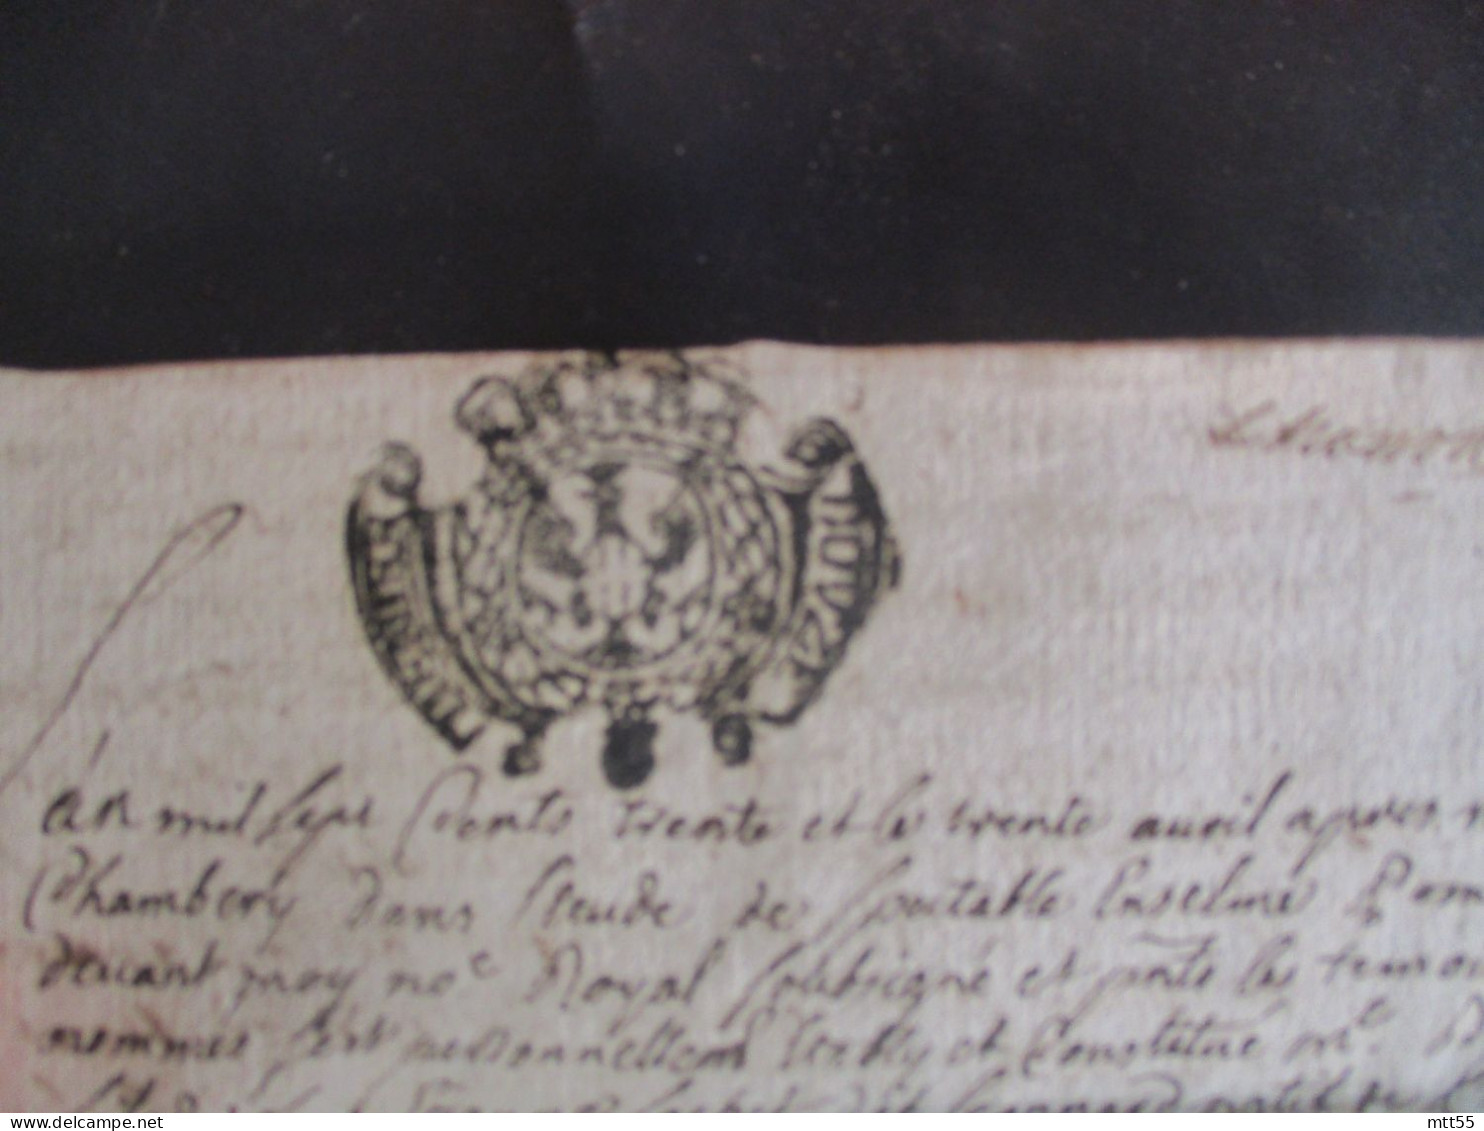 1730 MANUSCRIT CACHET DE GENERALITE VENTE A MONTMEILLANT - Manuscripts